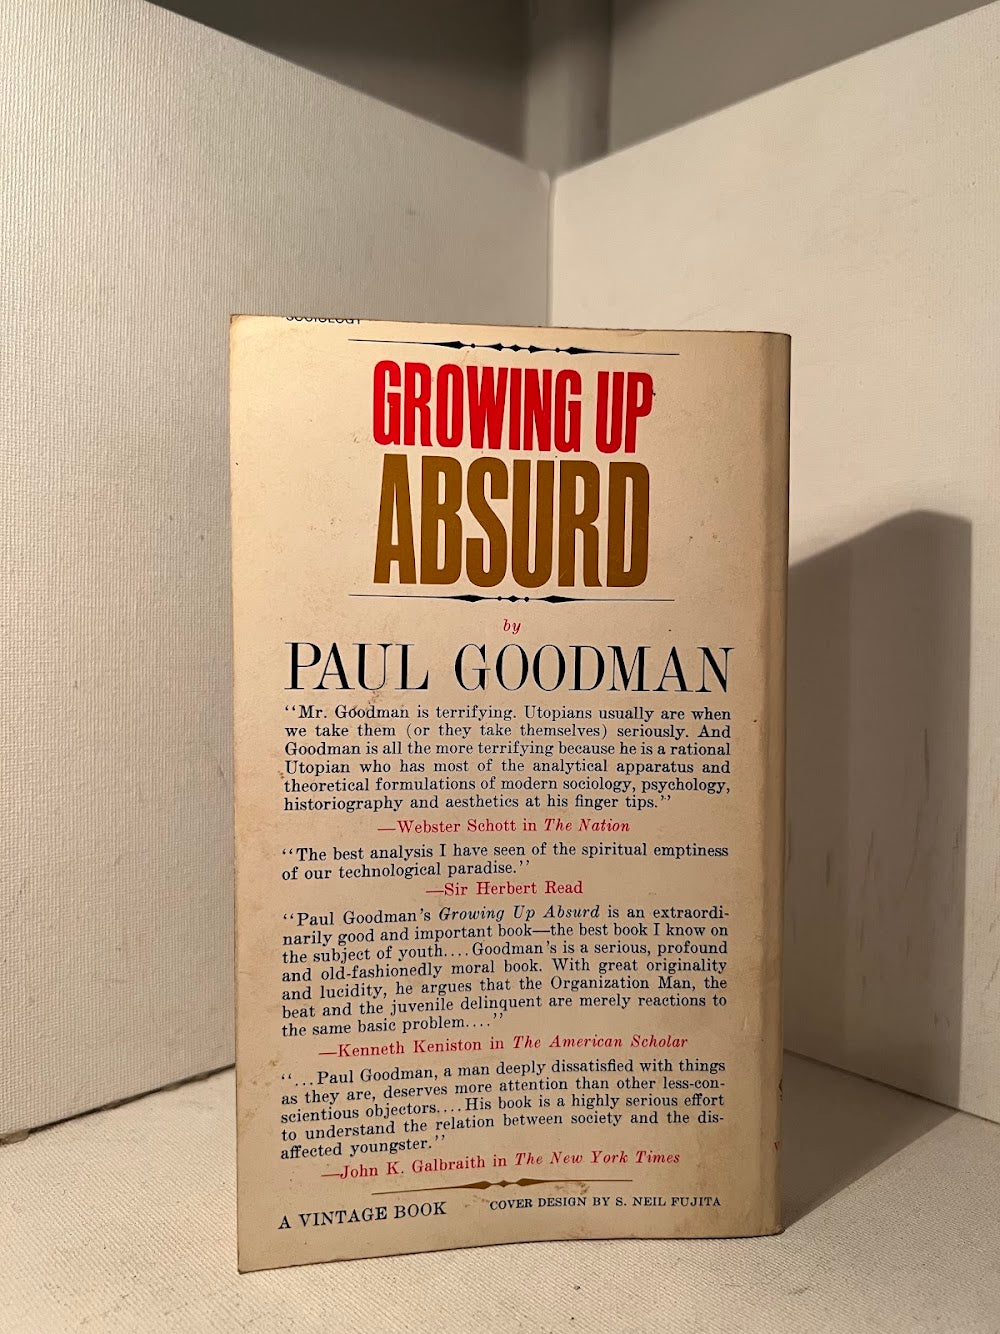 Growing Up Absurd by Paul Goodman